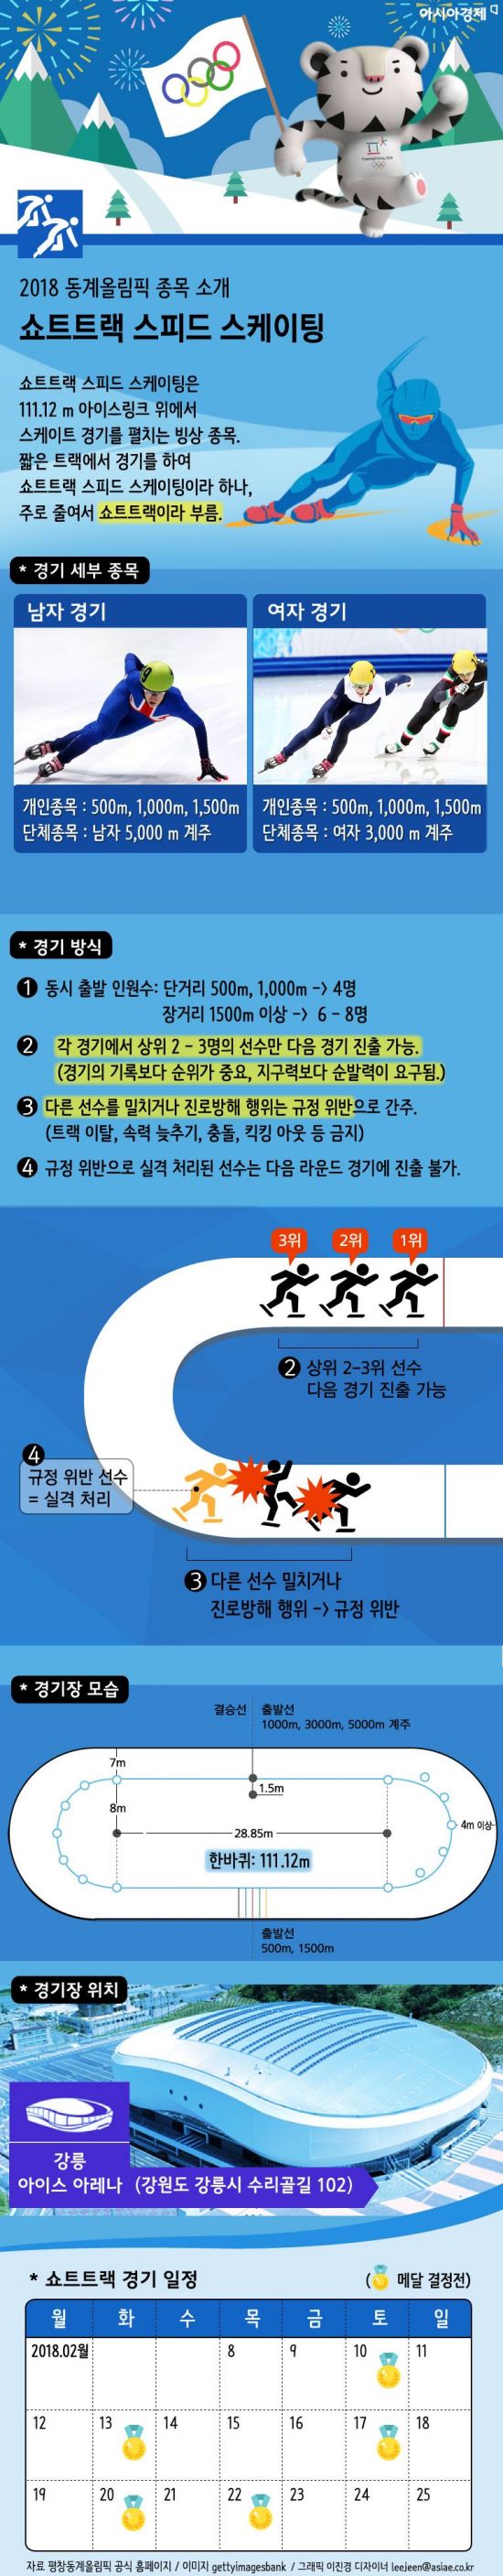 [인포그래픽]2018 평창 동계올림픽 종목소개-쇼트트랙 스피드 스케이팅